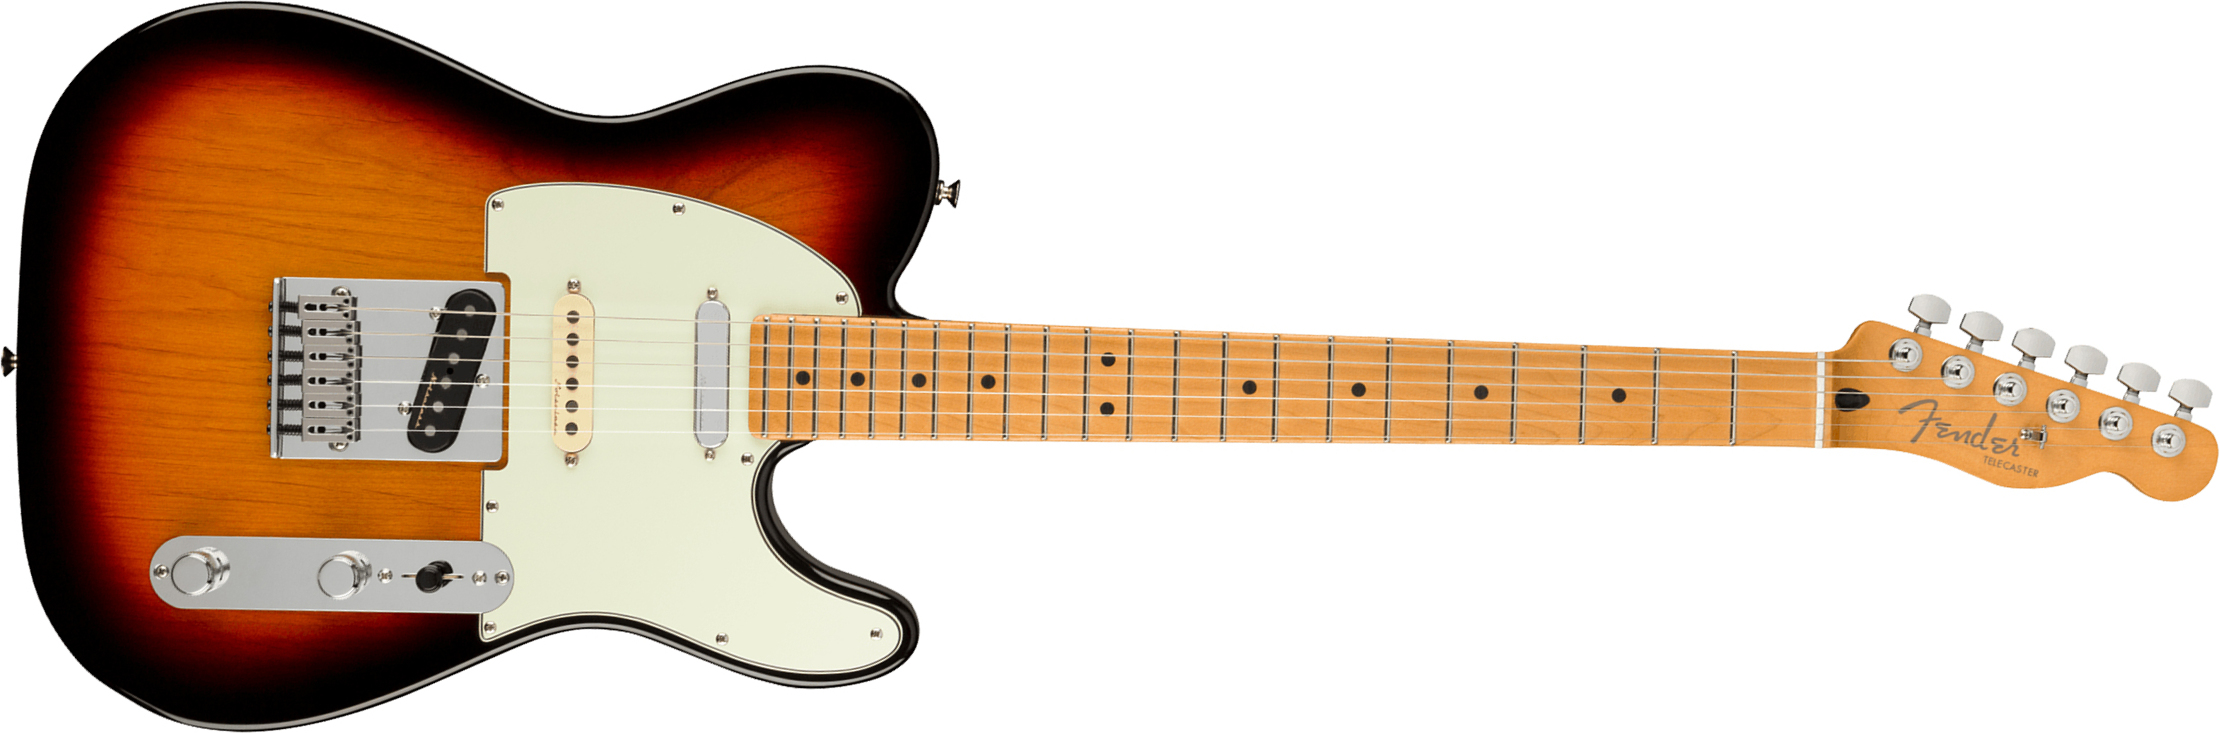 Fender Tele Player Plus Nashville Mex 3s Ht Mn - 3-color Sunburst - Guitarra eléctrica con forma de tel - Main picture